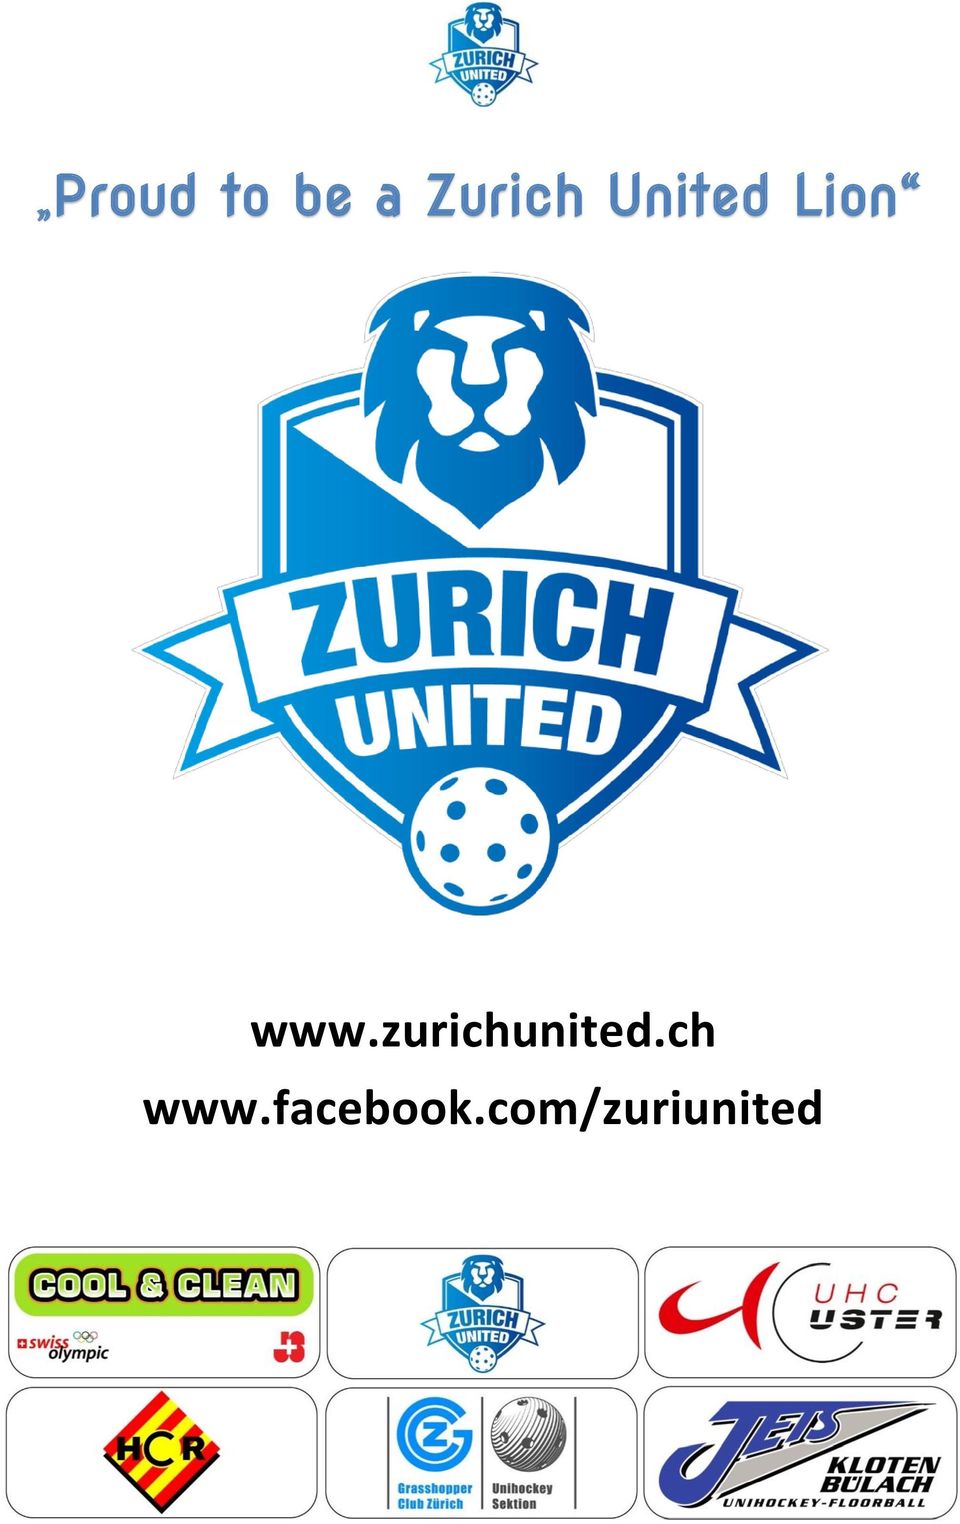 www.zurichunited.